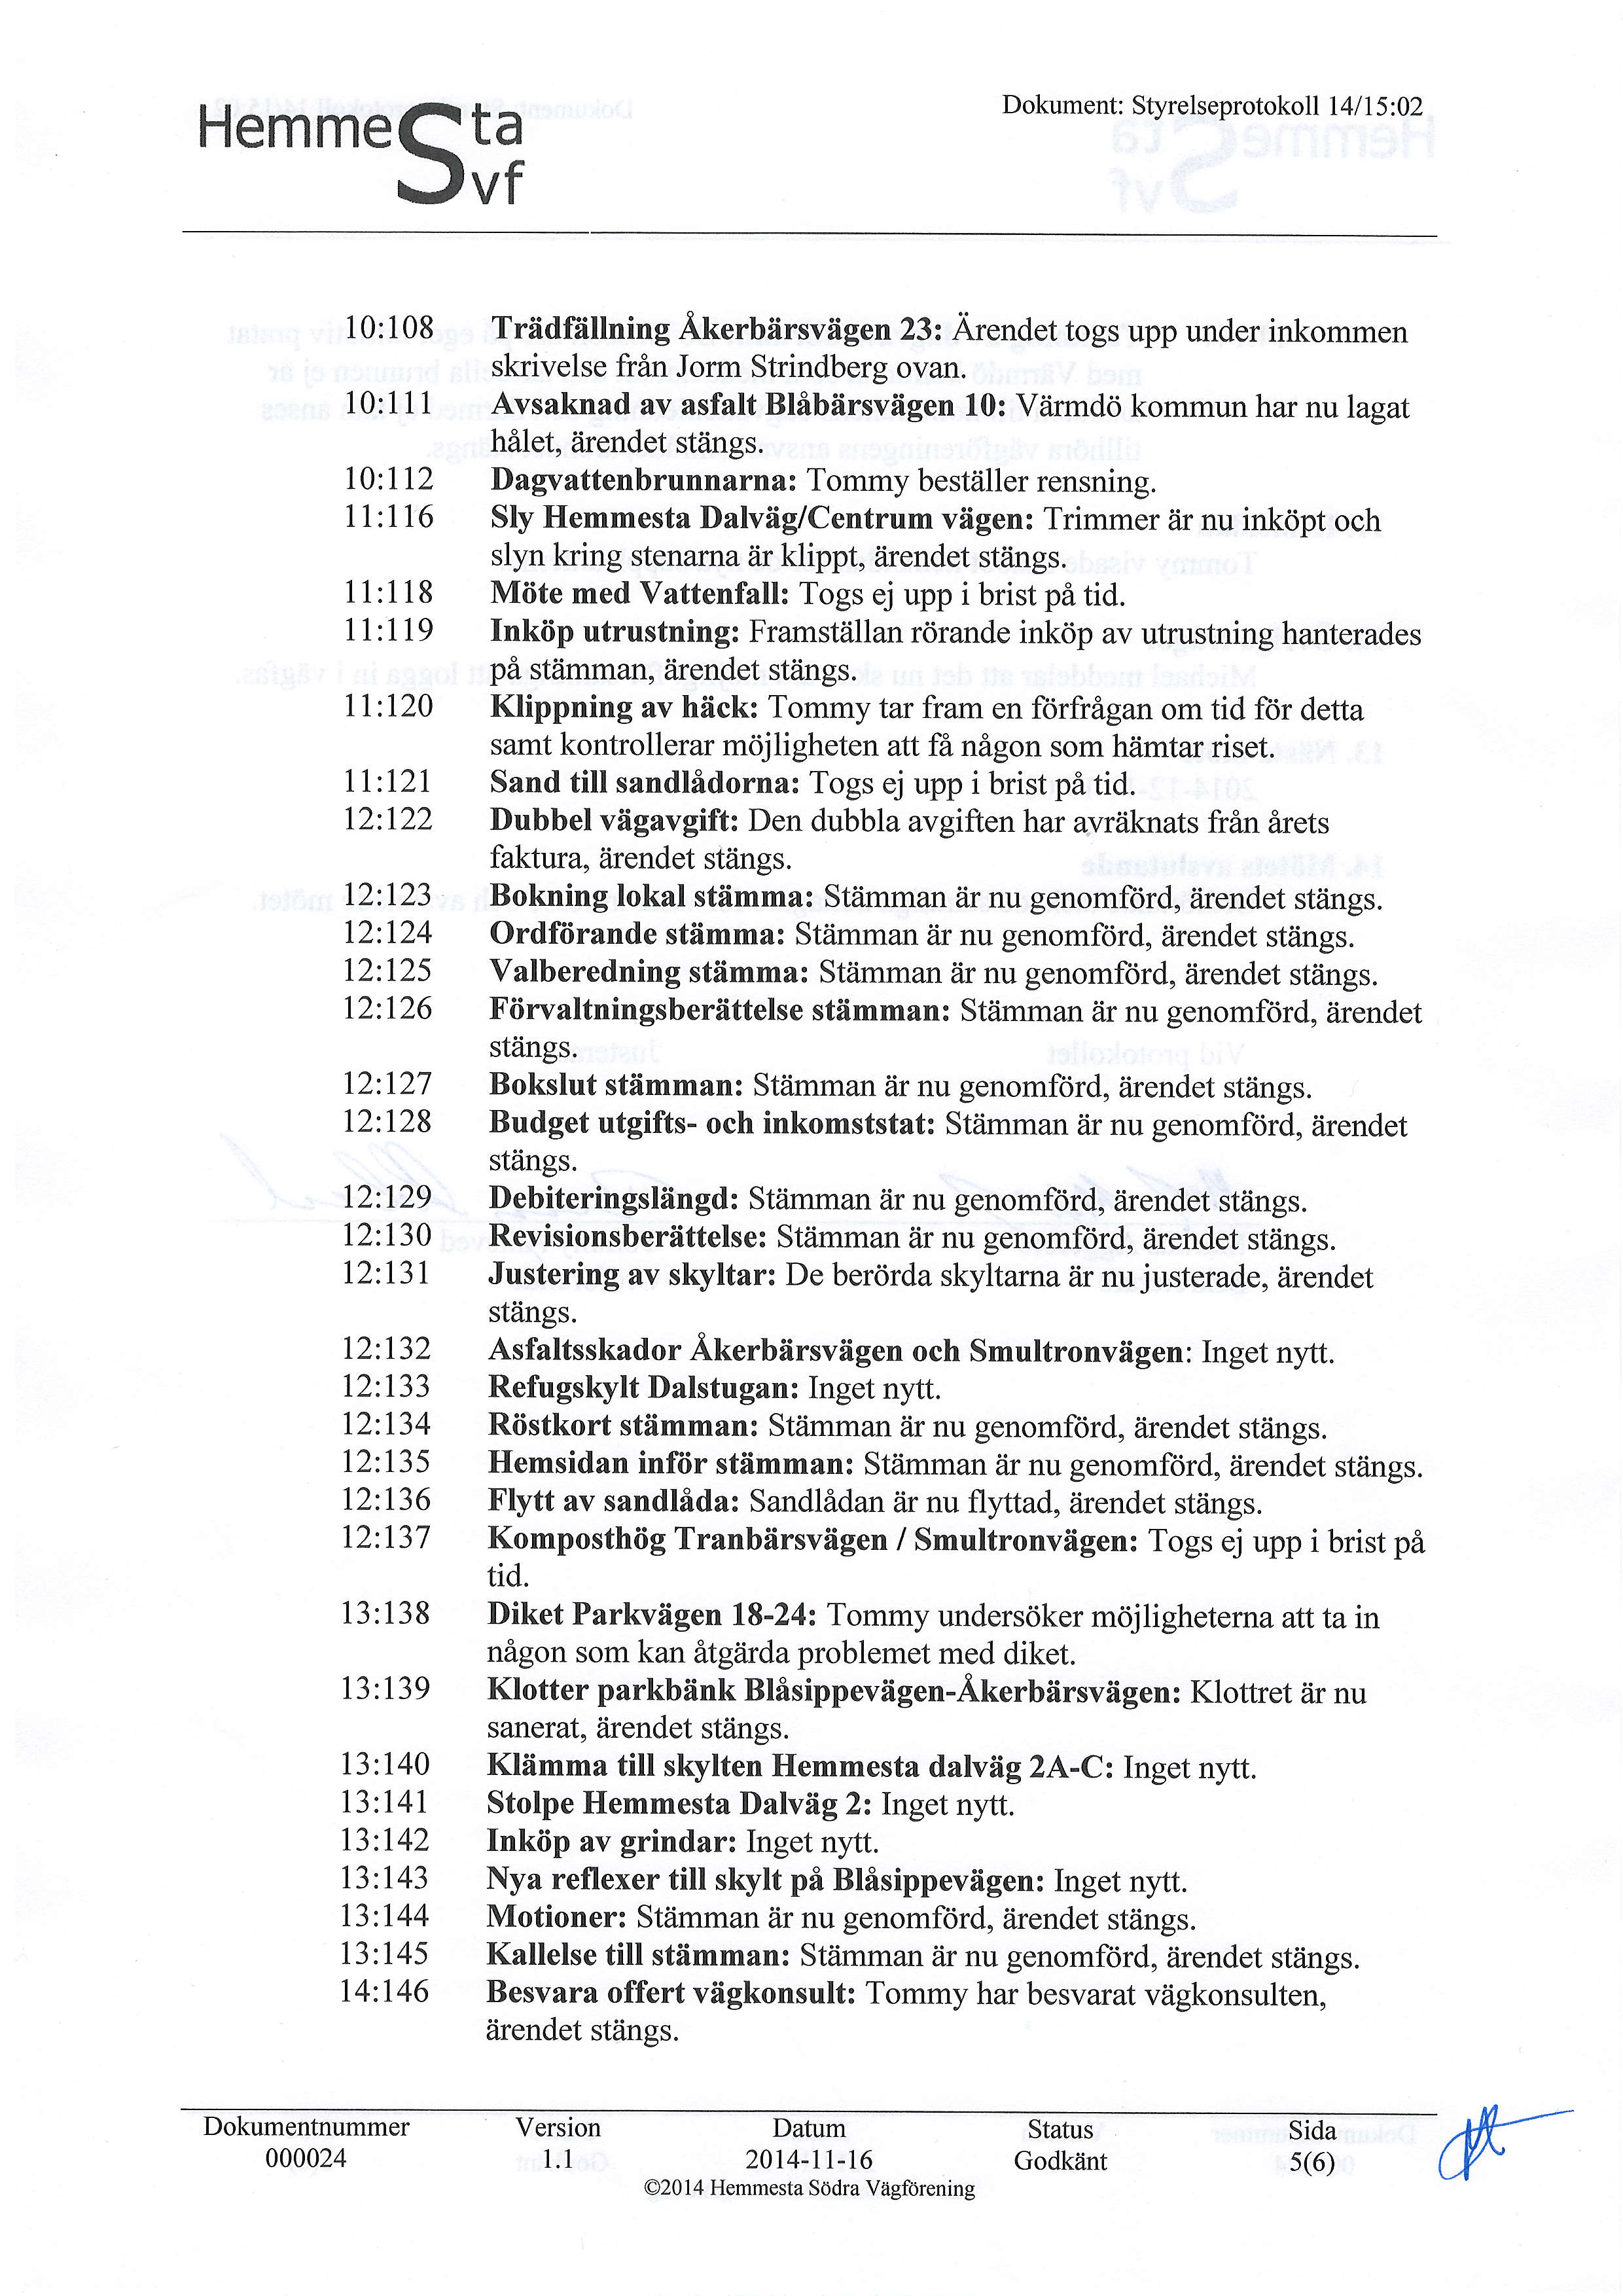 HemmeQtu Jvf Dokument: Styrelseprotokoll l4l 15 :02 10:108 Triidfiillning Akerbiirsviigen 23: Arendet togs upp under inkommen skrivelse frin Jorm Strindberg ovan.